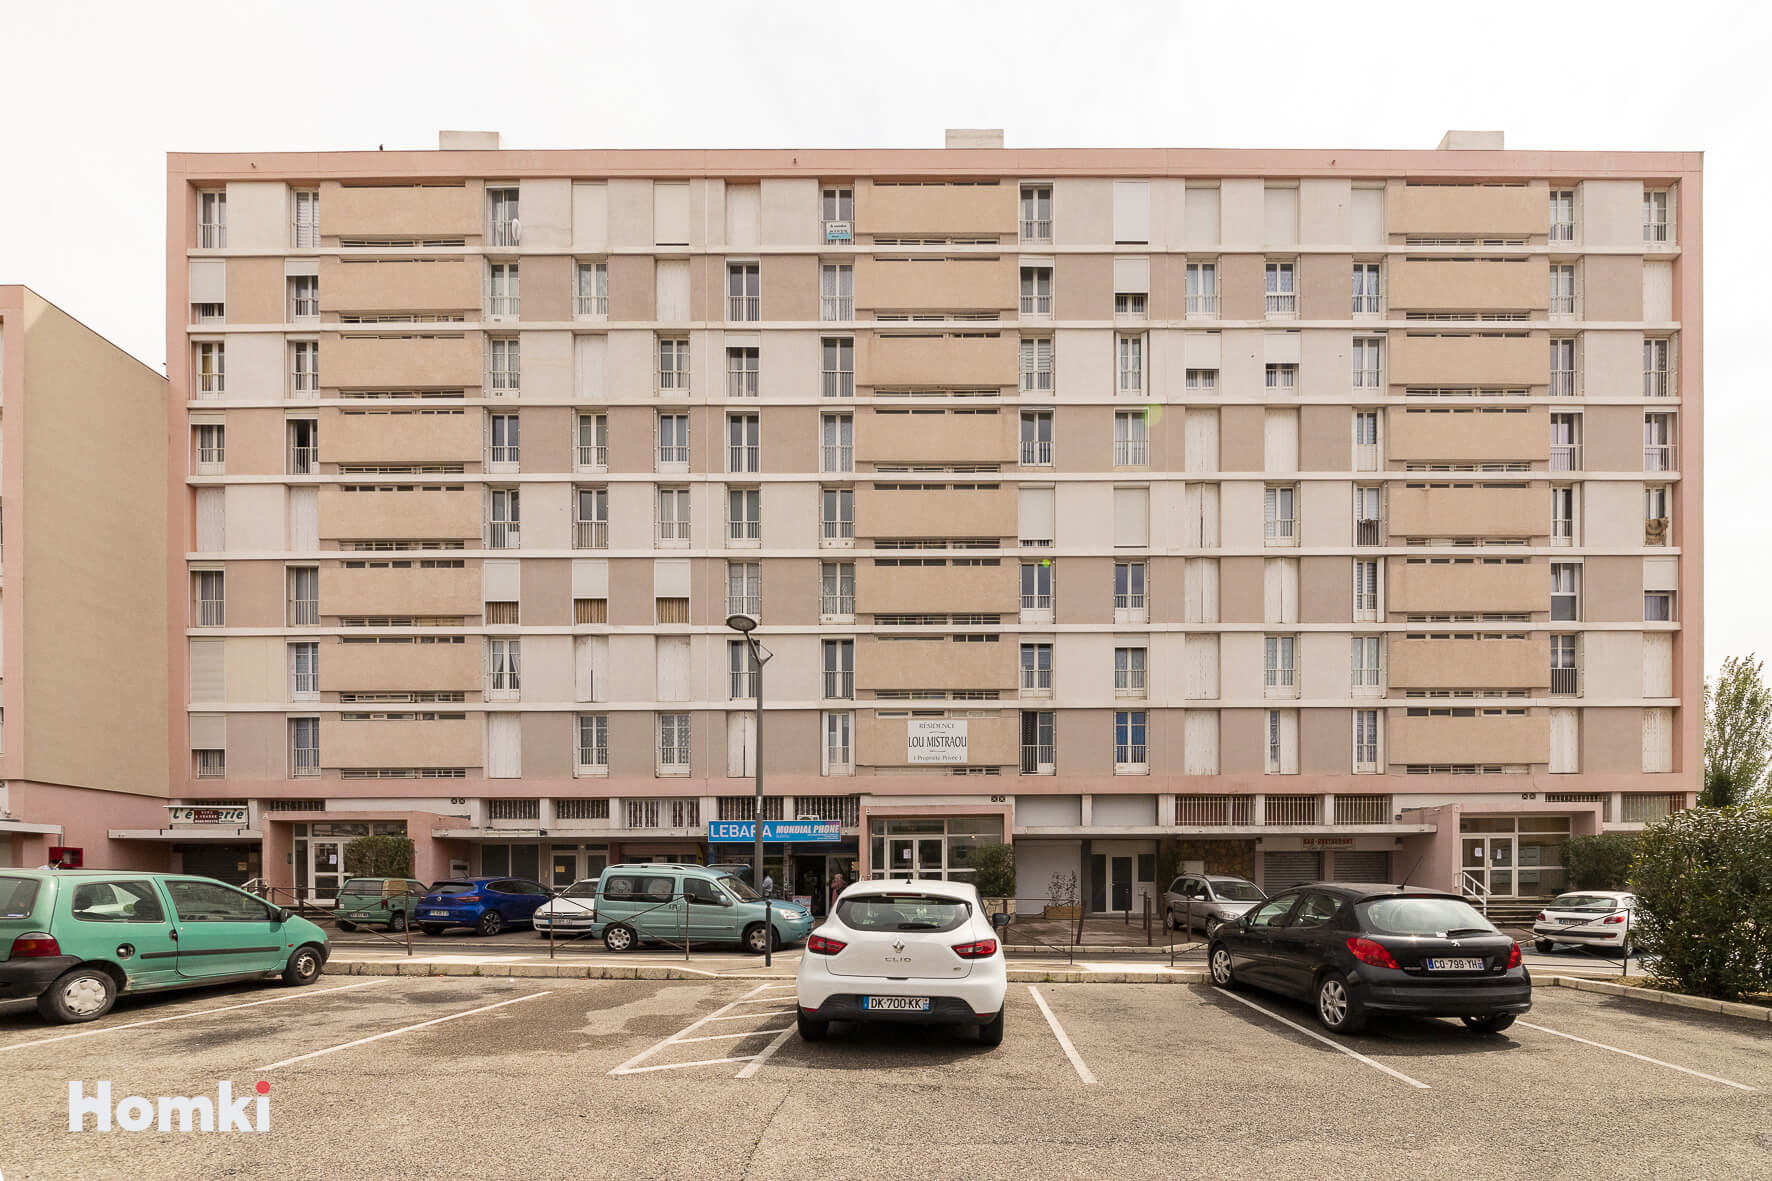 Homki - Vente Appartement  de 65.0 m² à Port-de-Bouc 13110